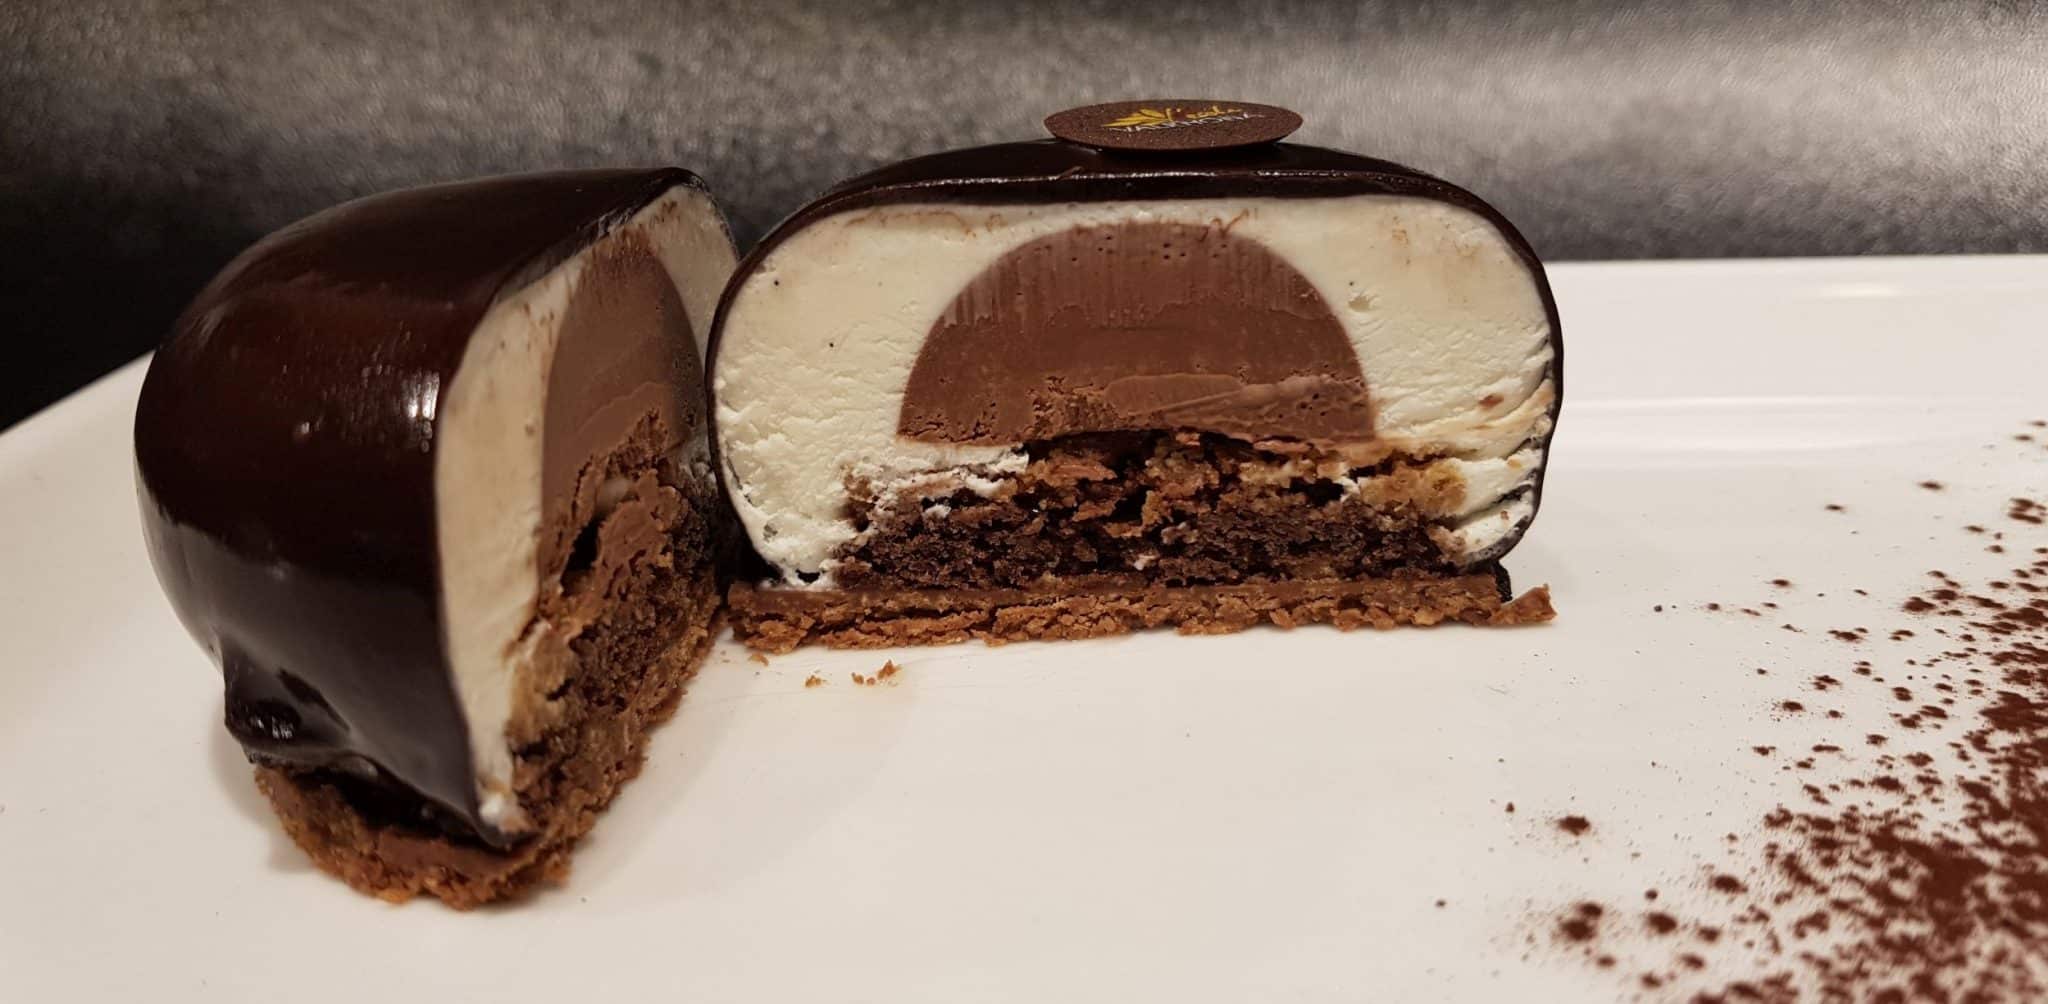 את הקראנצ' נוגט לעוגה מכינים מ-100 גרם שוקולד מריר ולרונה, 100 גרם מחית נוגט ולרונה ו- 90 גרם קורנפלקס. צילום אסף לוי